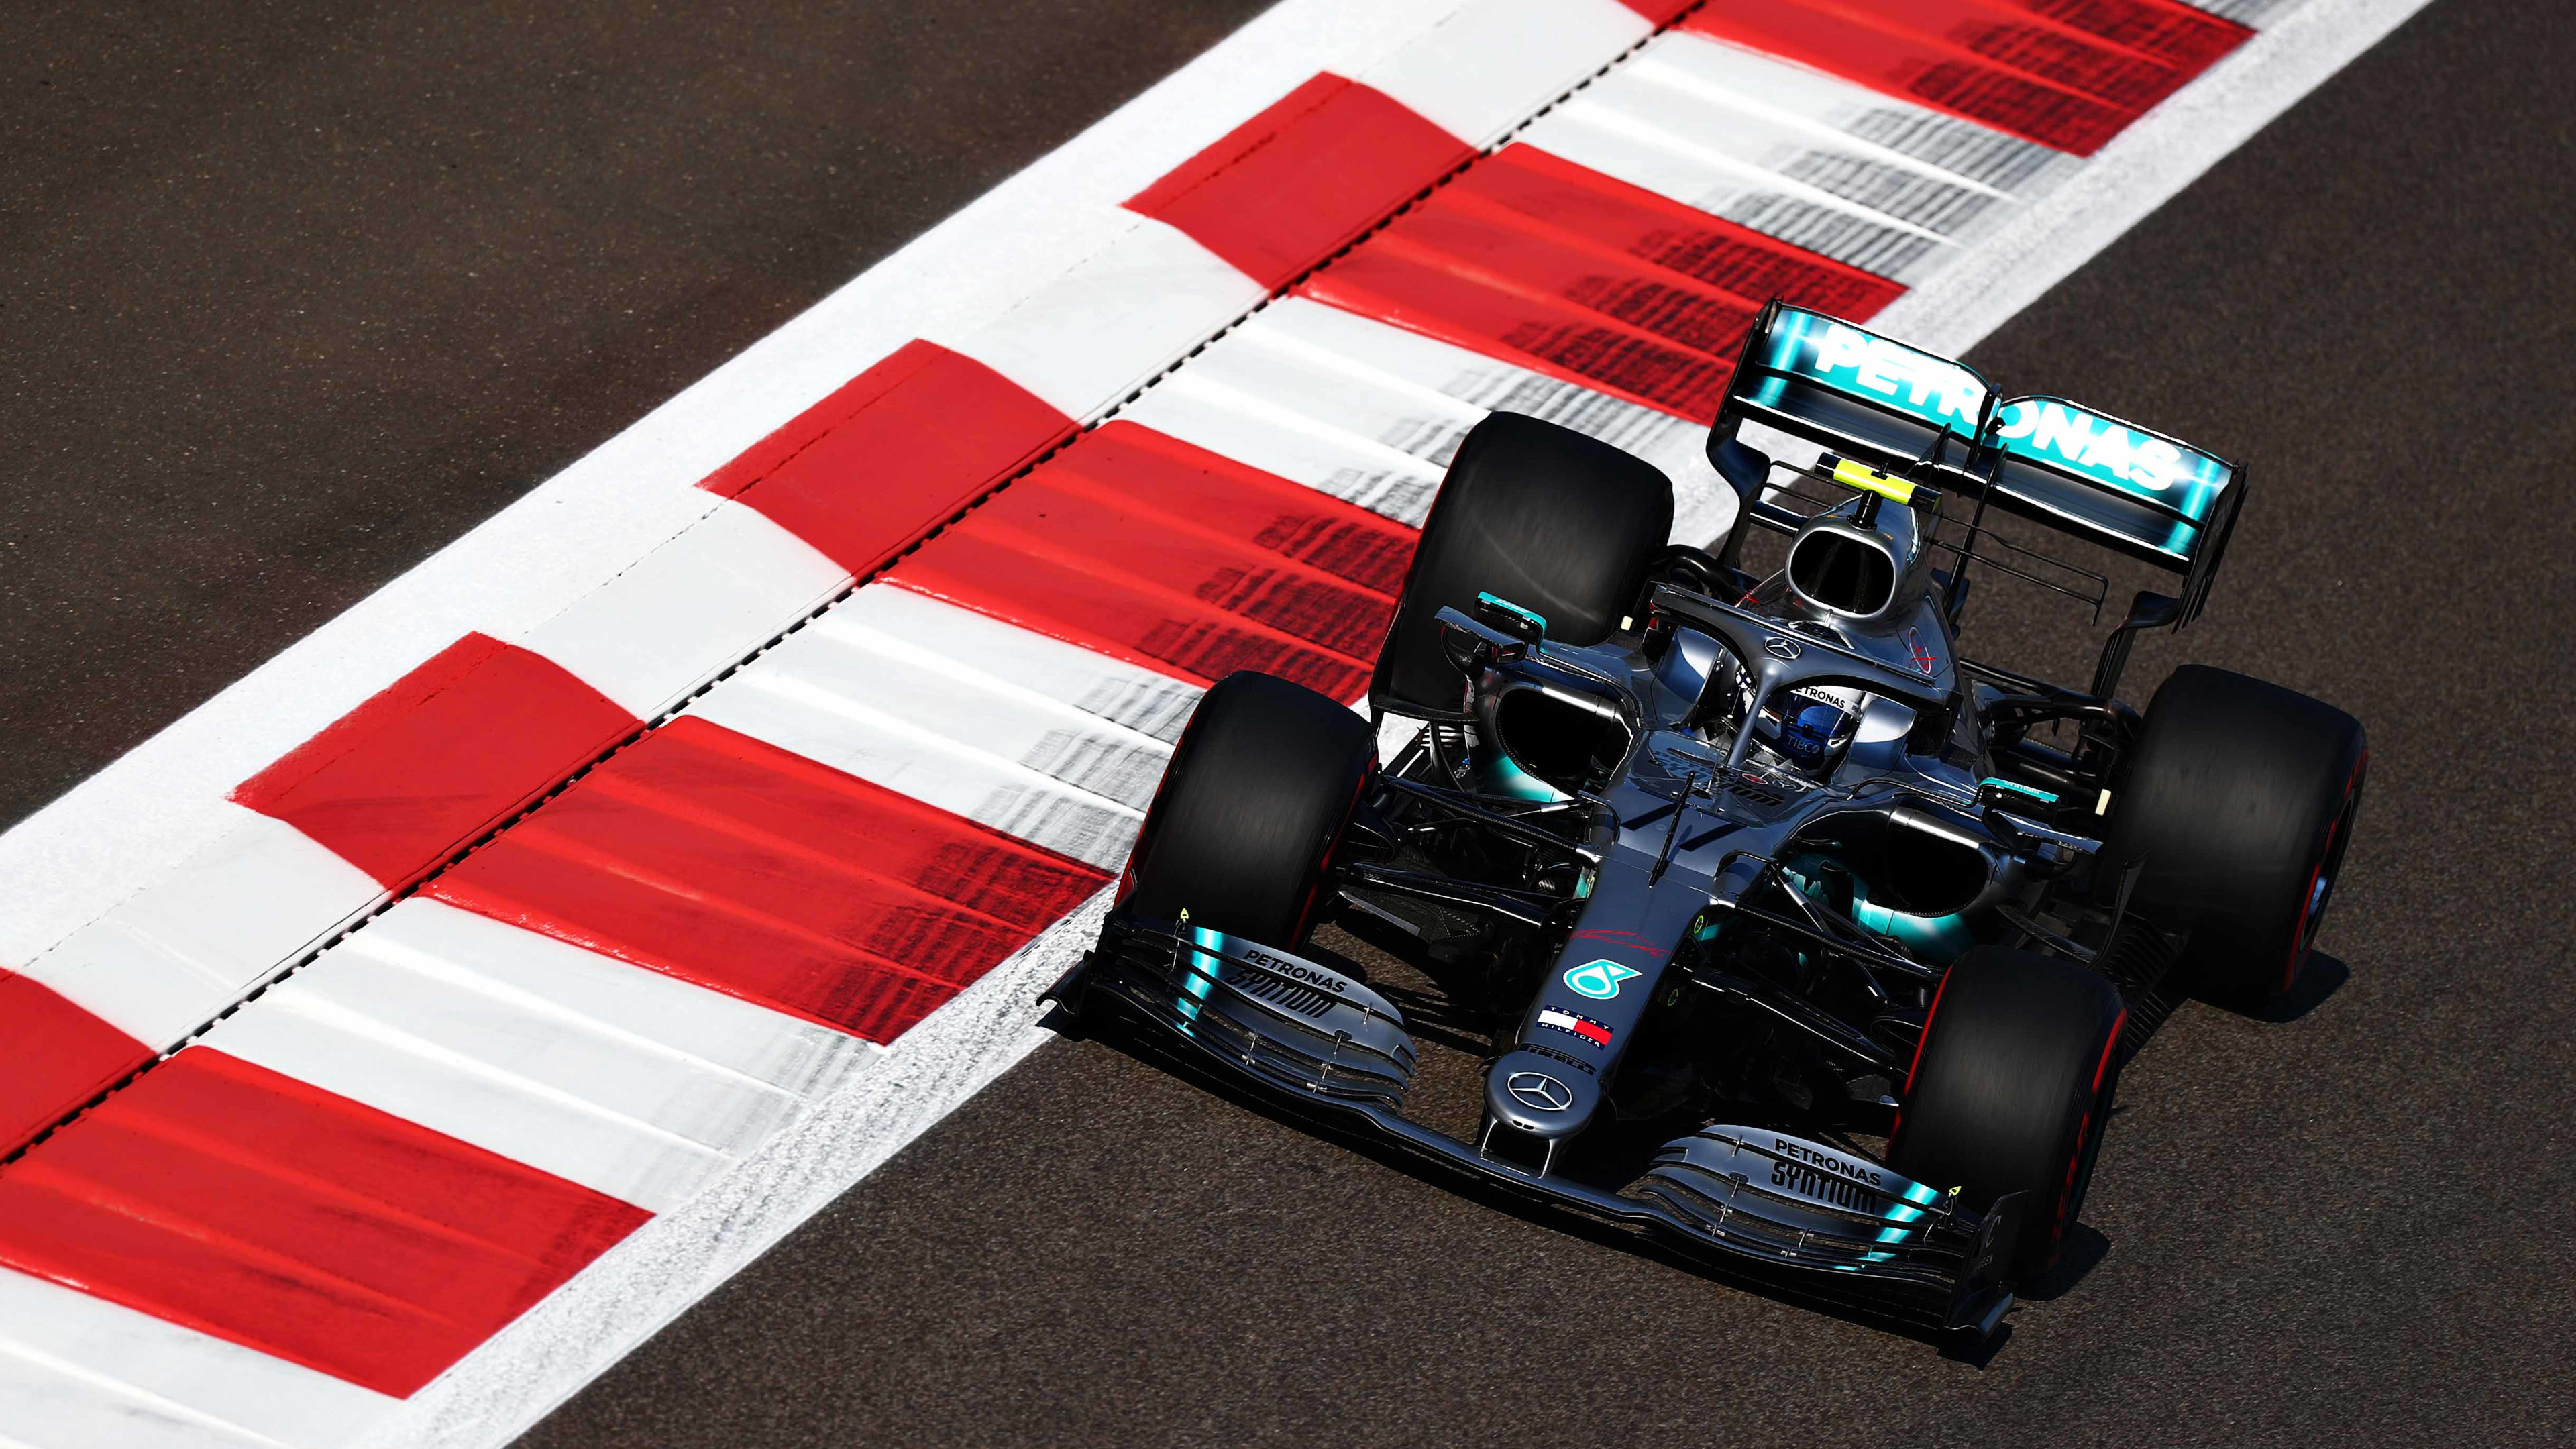 orkester hav det sjovt Express Abu Dhabi Grand Prix 2019 FP1 report & highlights: Bottas heads Verstappen  in opening Abu Dhabi session as Vettel crashes | Formula 1®